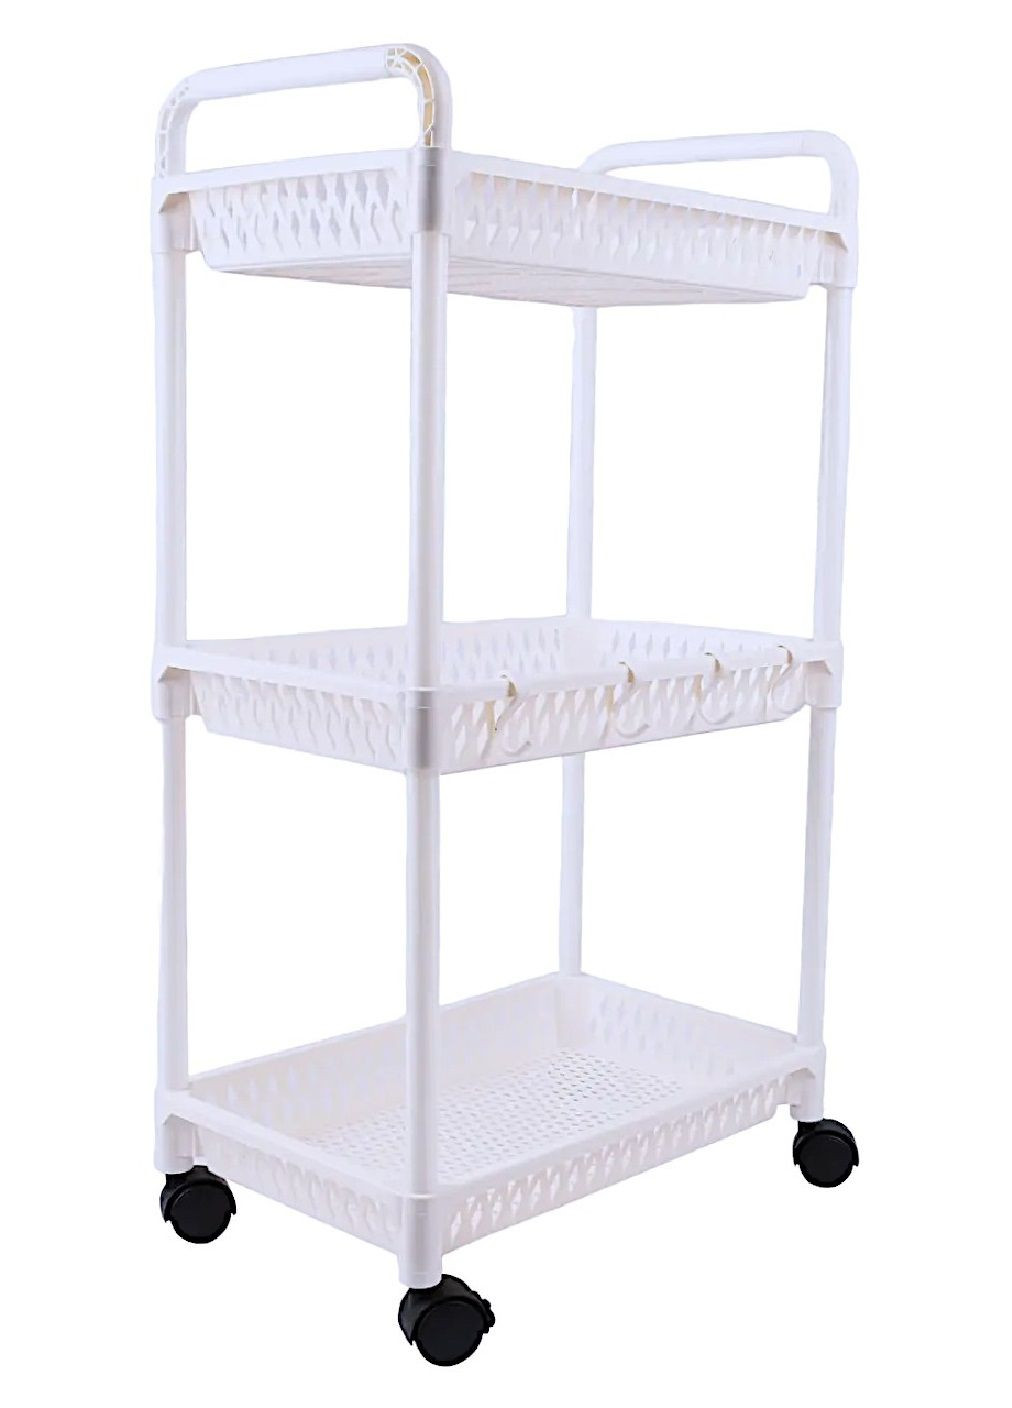 Этажерка трехъярусная 3 секции на колесиках для хранения вещей в ванной кухне детской 40х25,5х72 см (476686-Prob) Белая Unbranded (288535832)